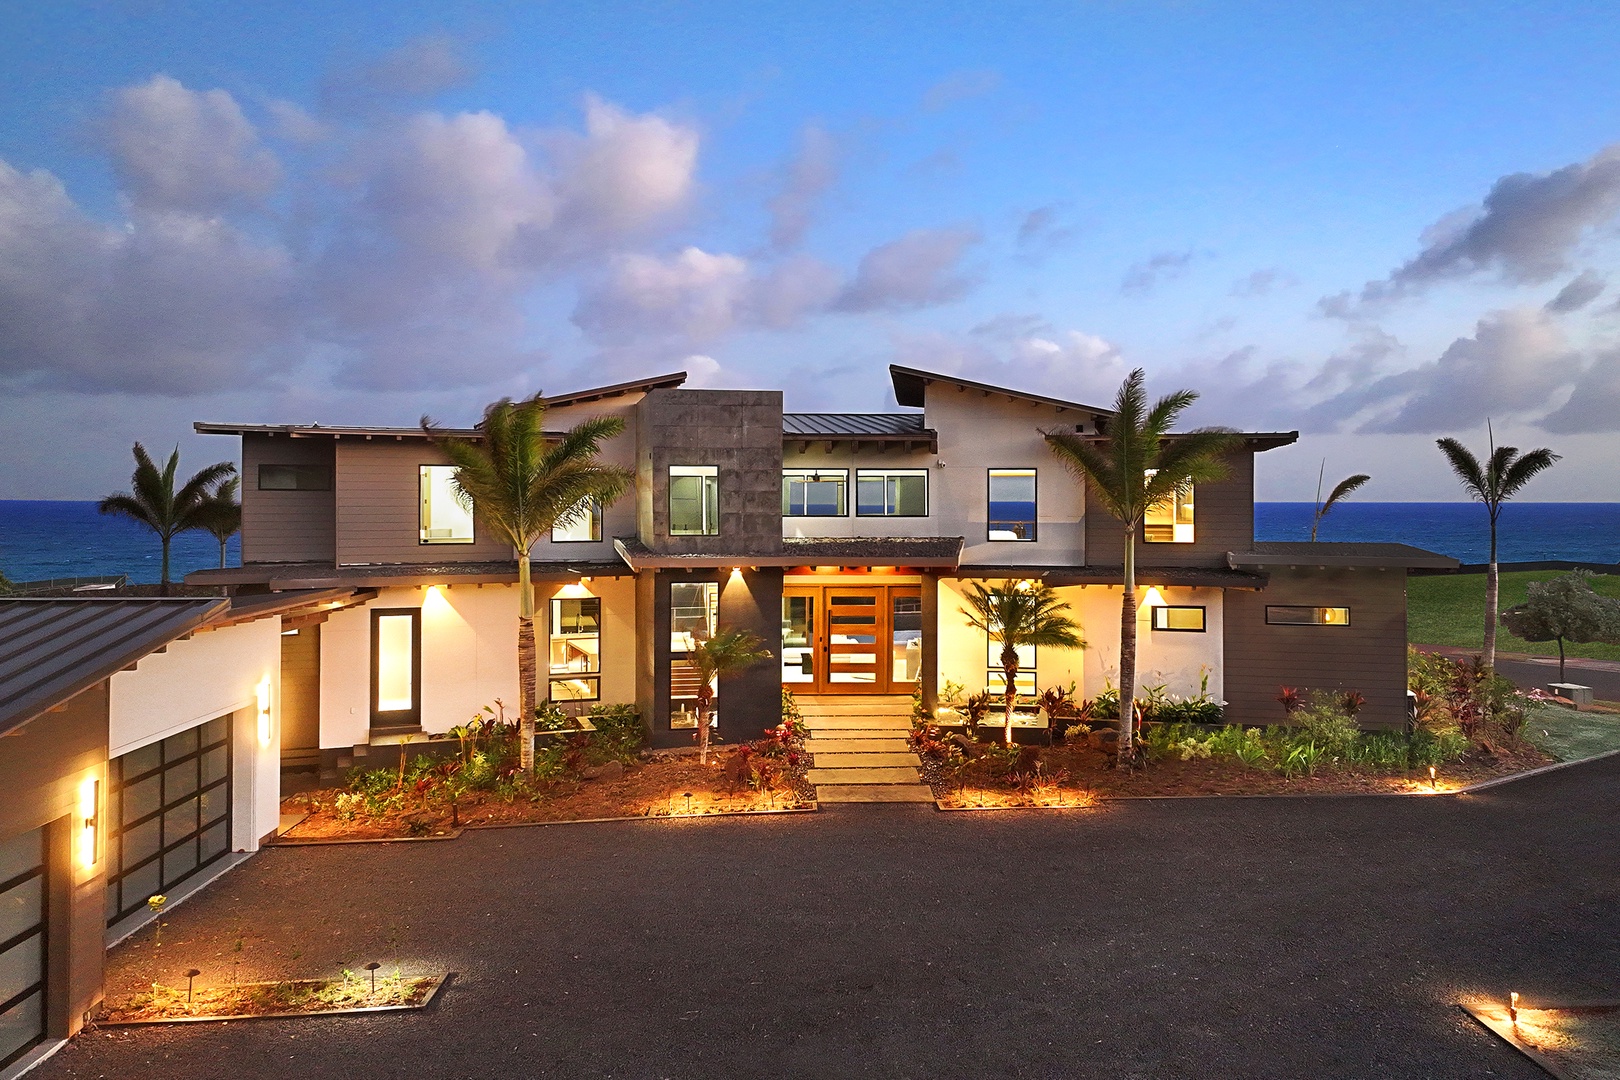 Koloa Vacation Rentals, Hale Makau - Welcome to Hale Makau, your luxury home away from home.